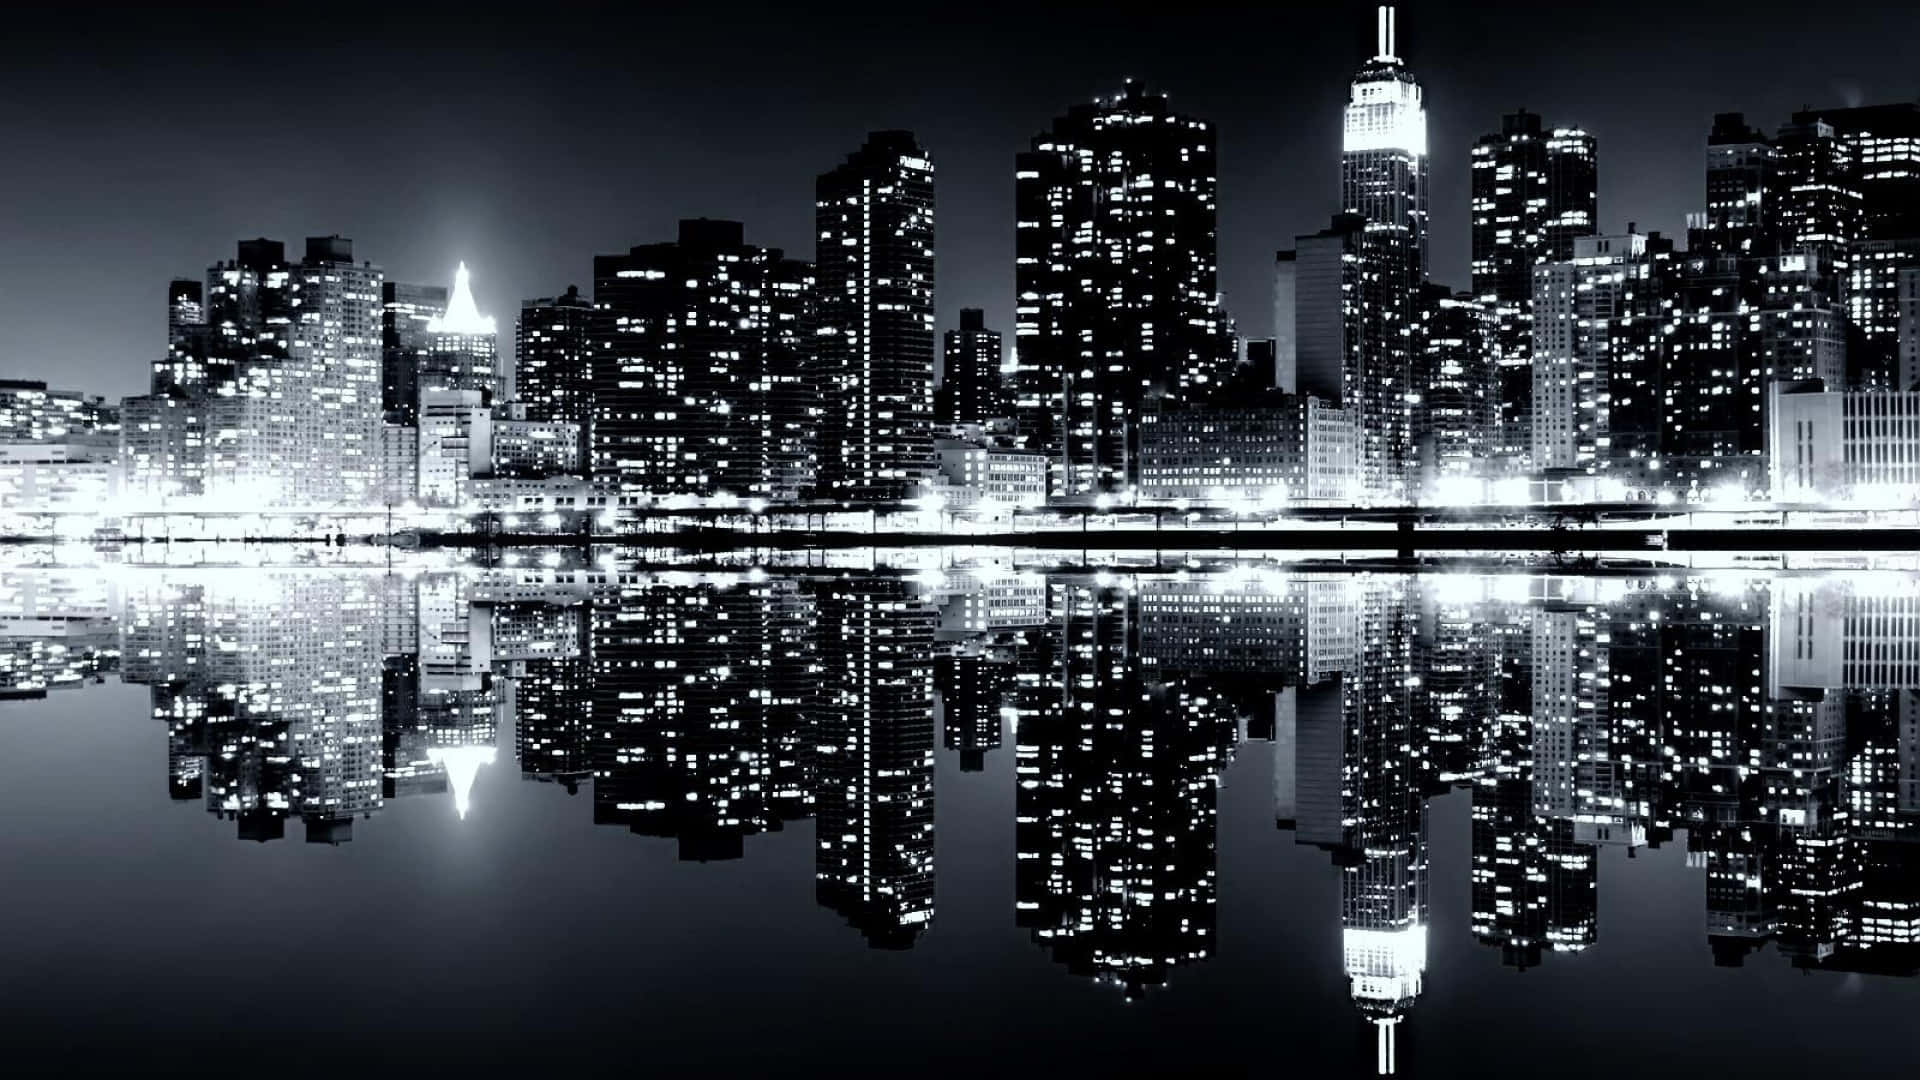 Elhorizonte De La Ciudad De Nueva York Reflejado En El Agua.